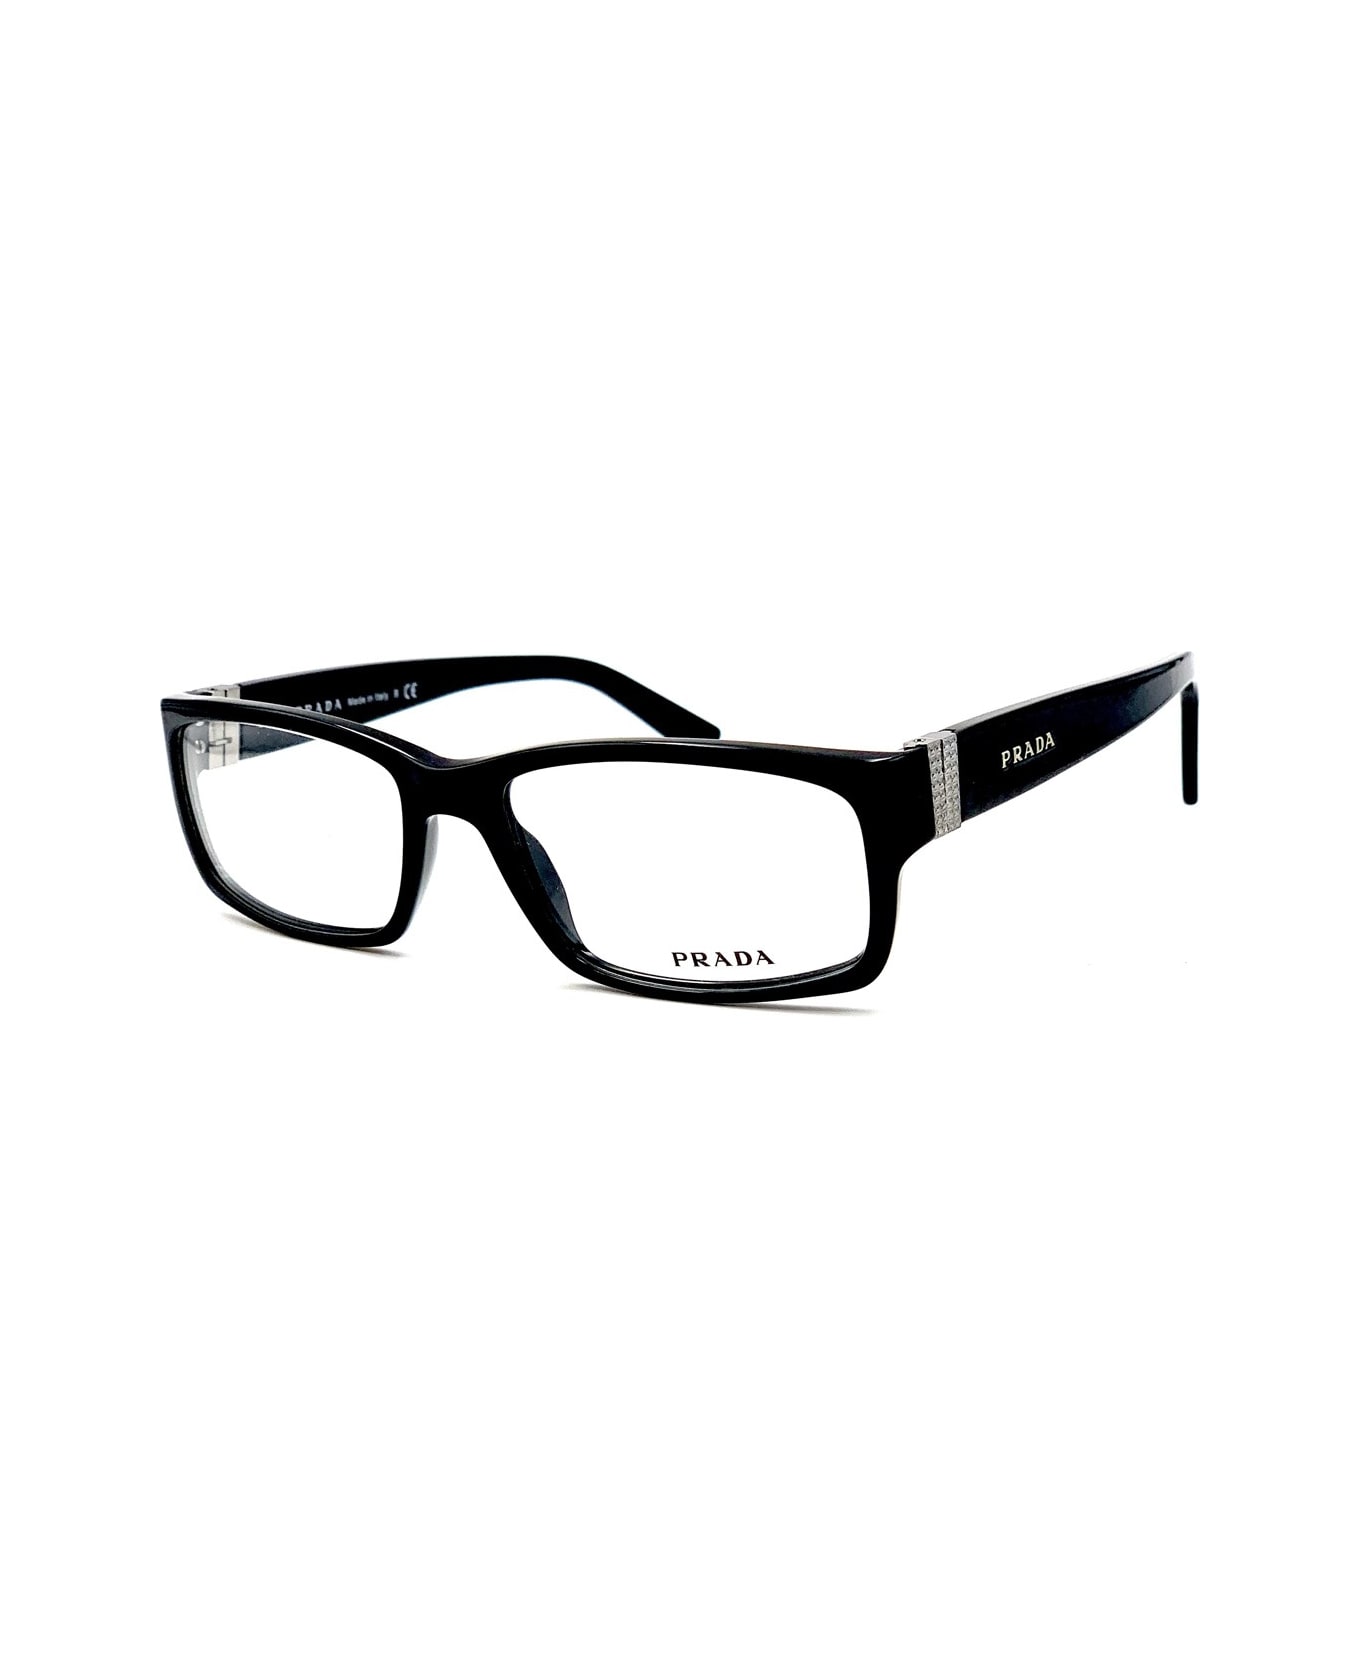 Prada Eyewear Pr 12lv Glasses - Nero